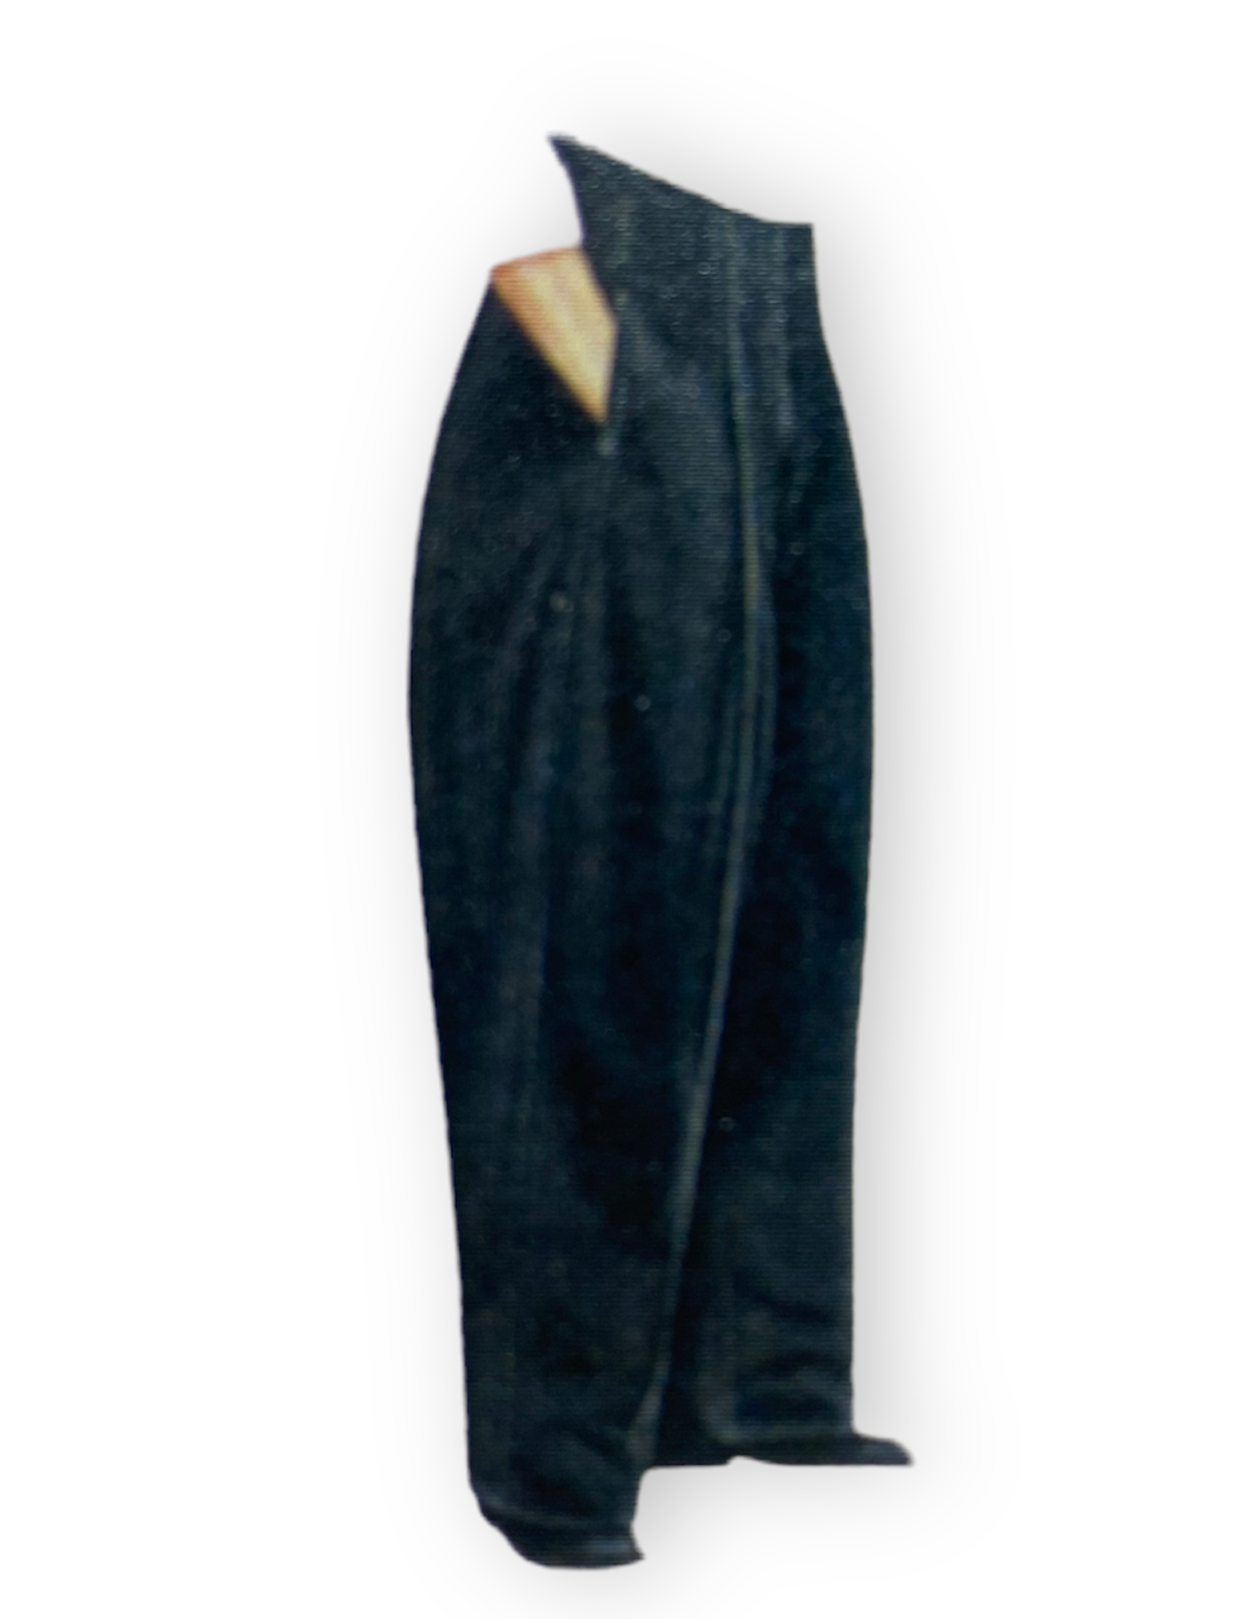  новый товар не использовался outlet ограниченное количество деформация брюки BENCOUGAR wild Hearts (watali ширина 37cmsso ширина 26cm) полиэстер 100% брюки багги деформация школьная форма 